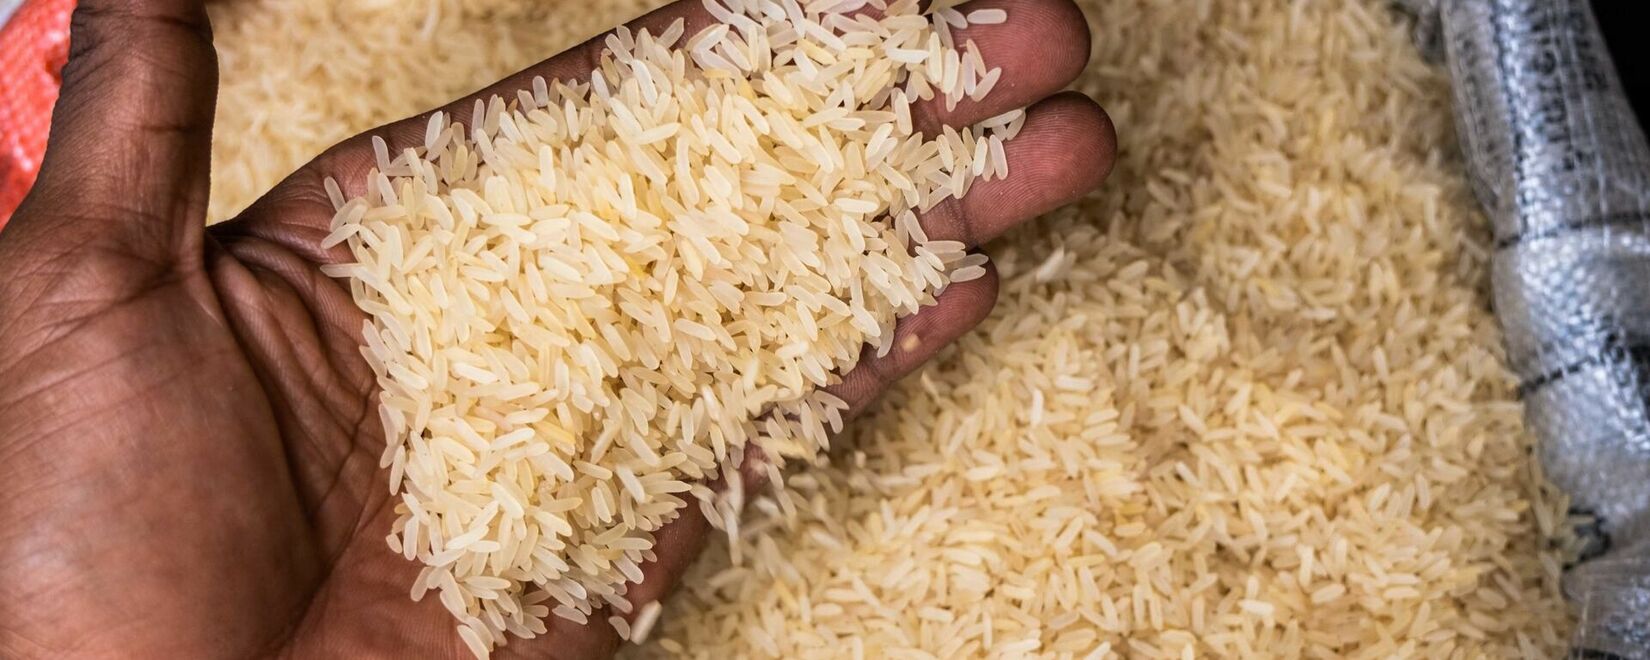 Индия рассматривает продление экспортной пошлины на пропаренный рис